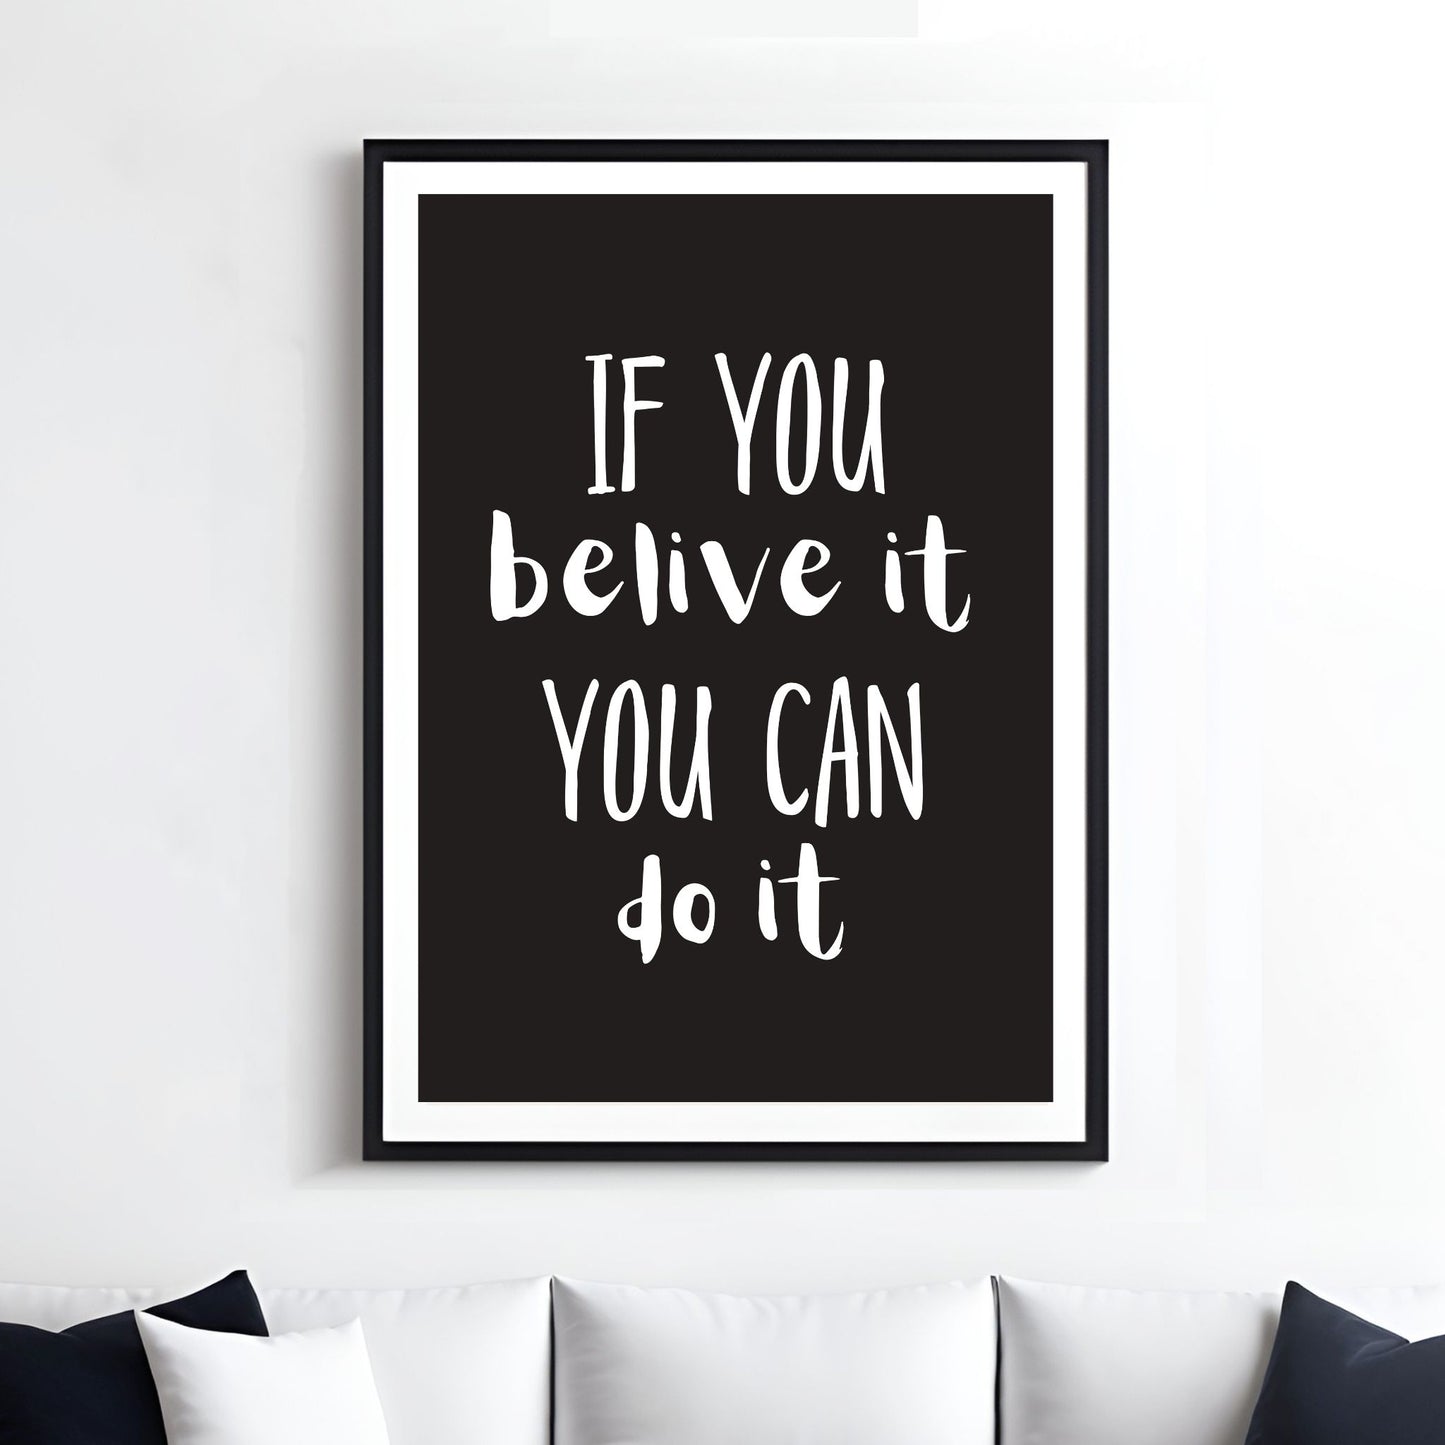 Grafisk tekstplakat med hvit skrift på sort bakgrunn og tekst "If you belive it, you can do it". Illustrasjon viser plakat i sort ramme med passepatout på en vegg over en sofa.